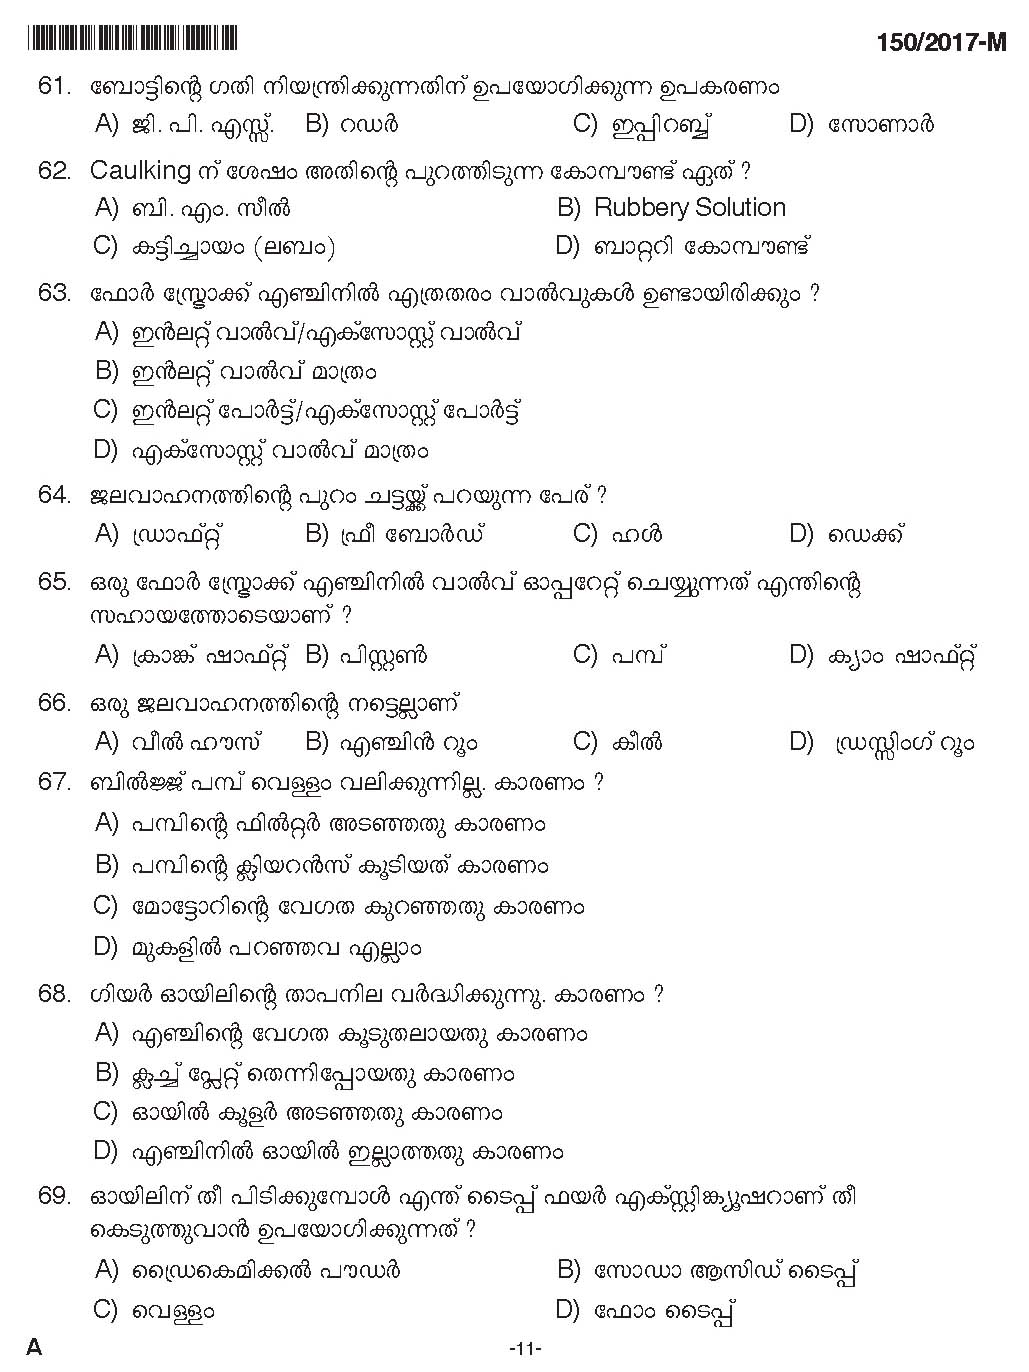 Kerala PSC Boat Deckman Exam Question Code 1502017 M 10